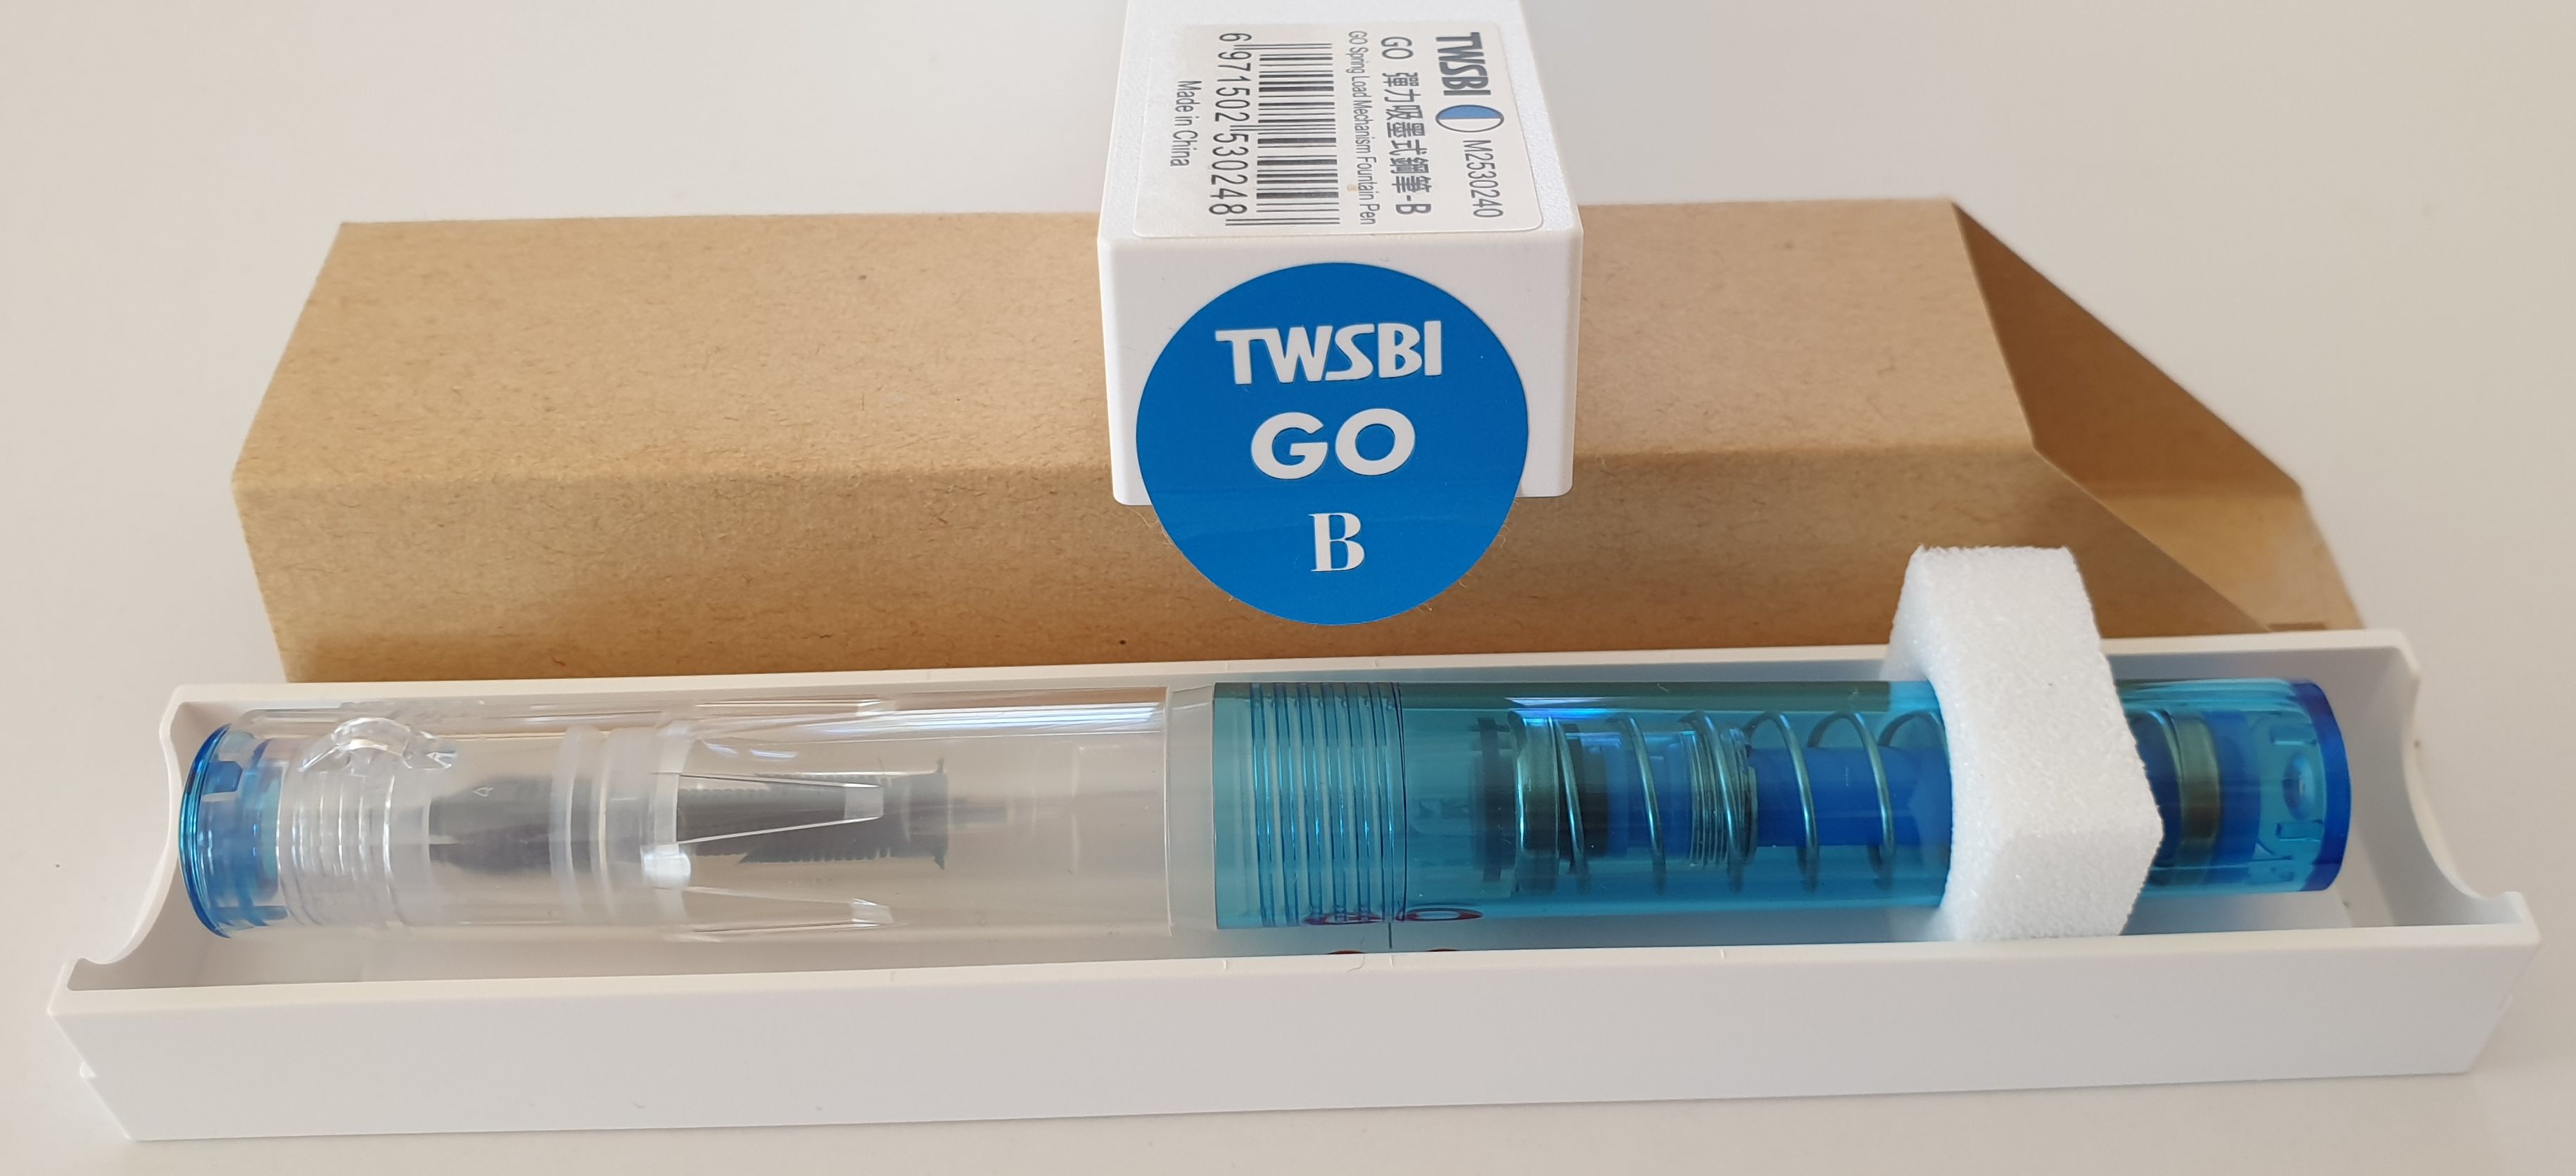 TWSBI-GO-B-blau-Verpackung.jpg